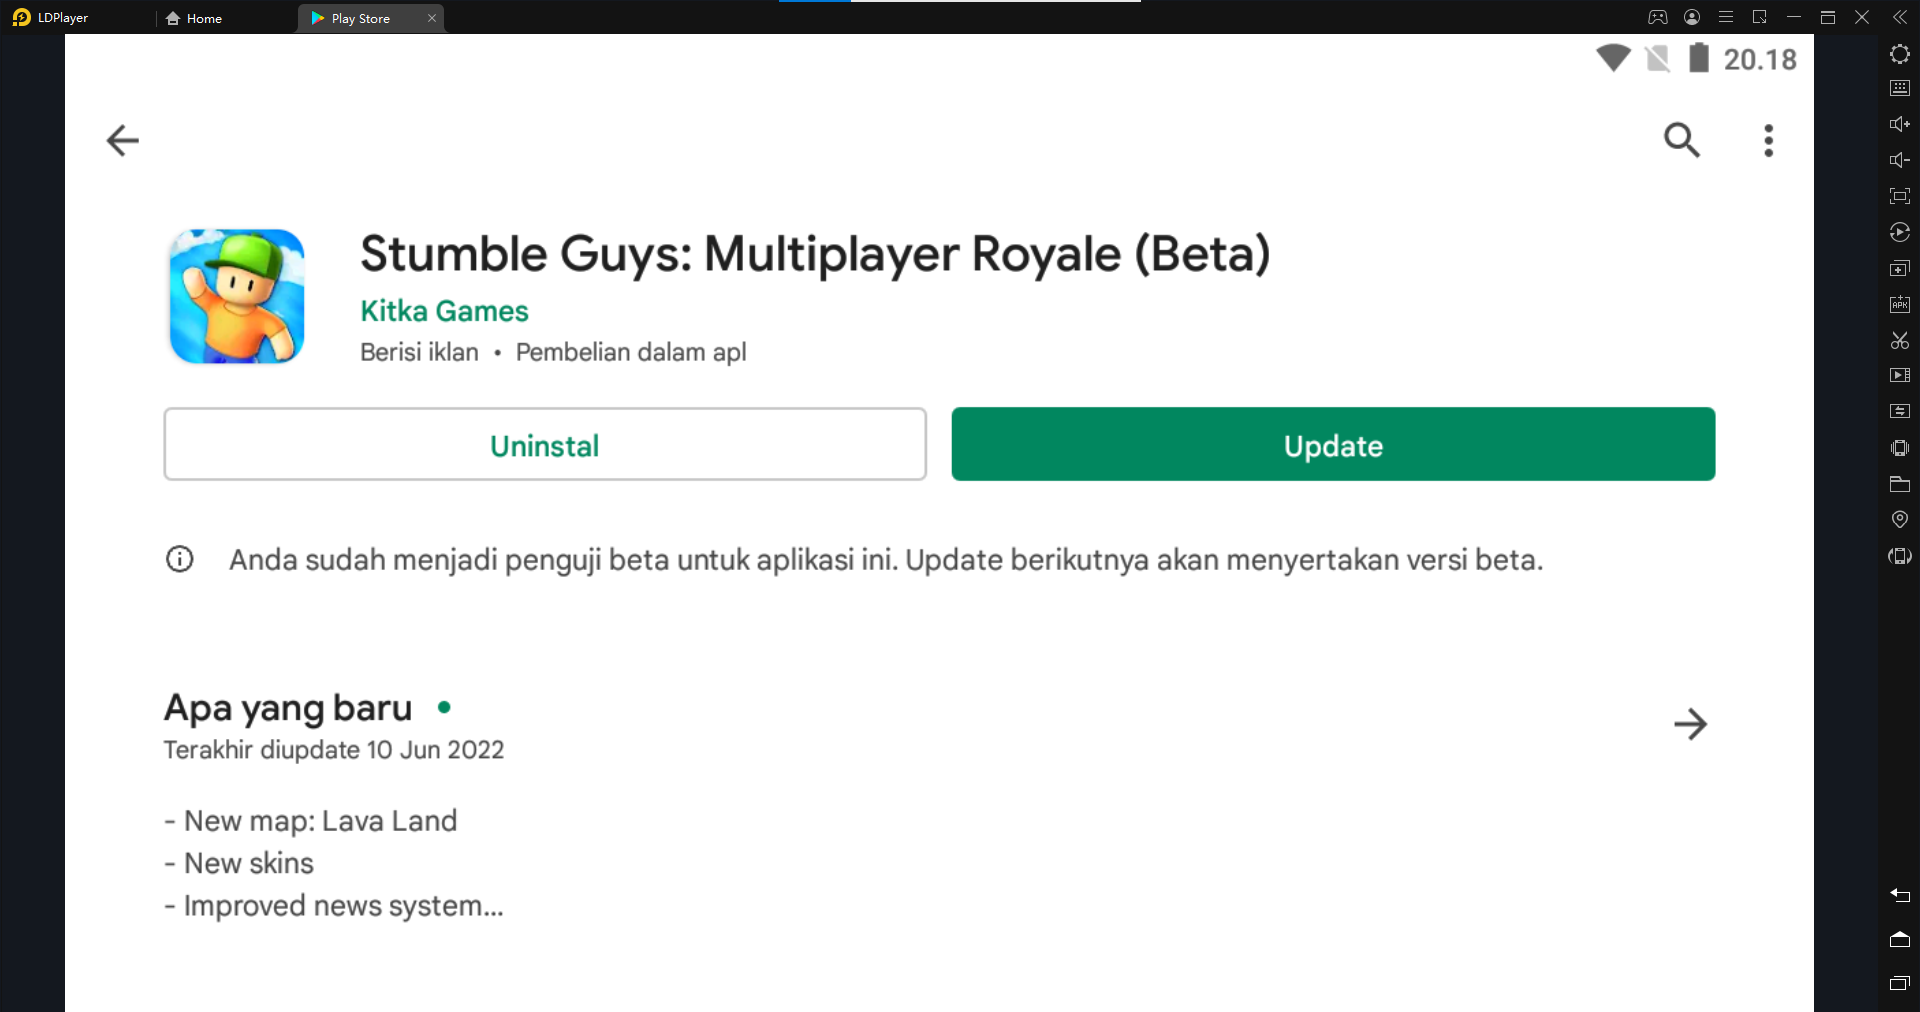 Stumble Guys 0.38 beta